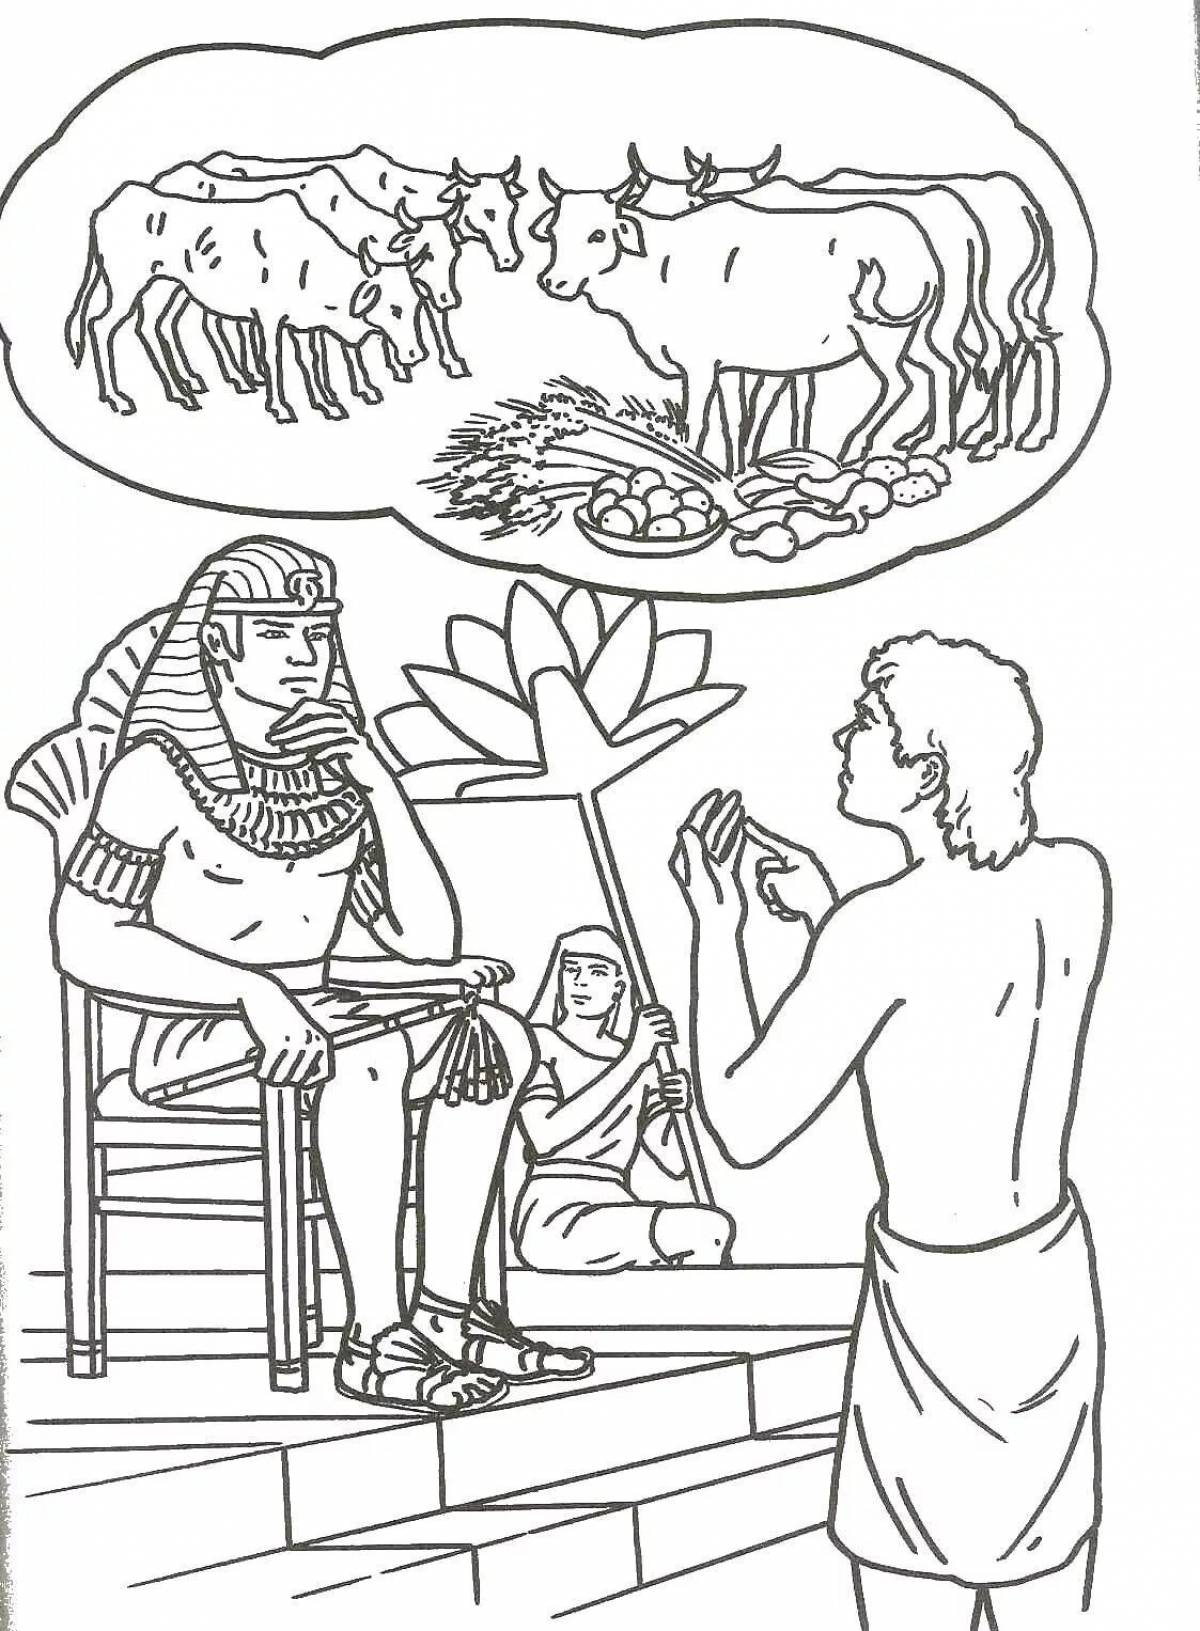 Joseph in Egypt #4